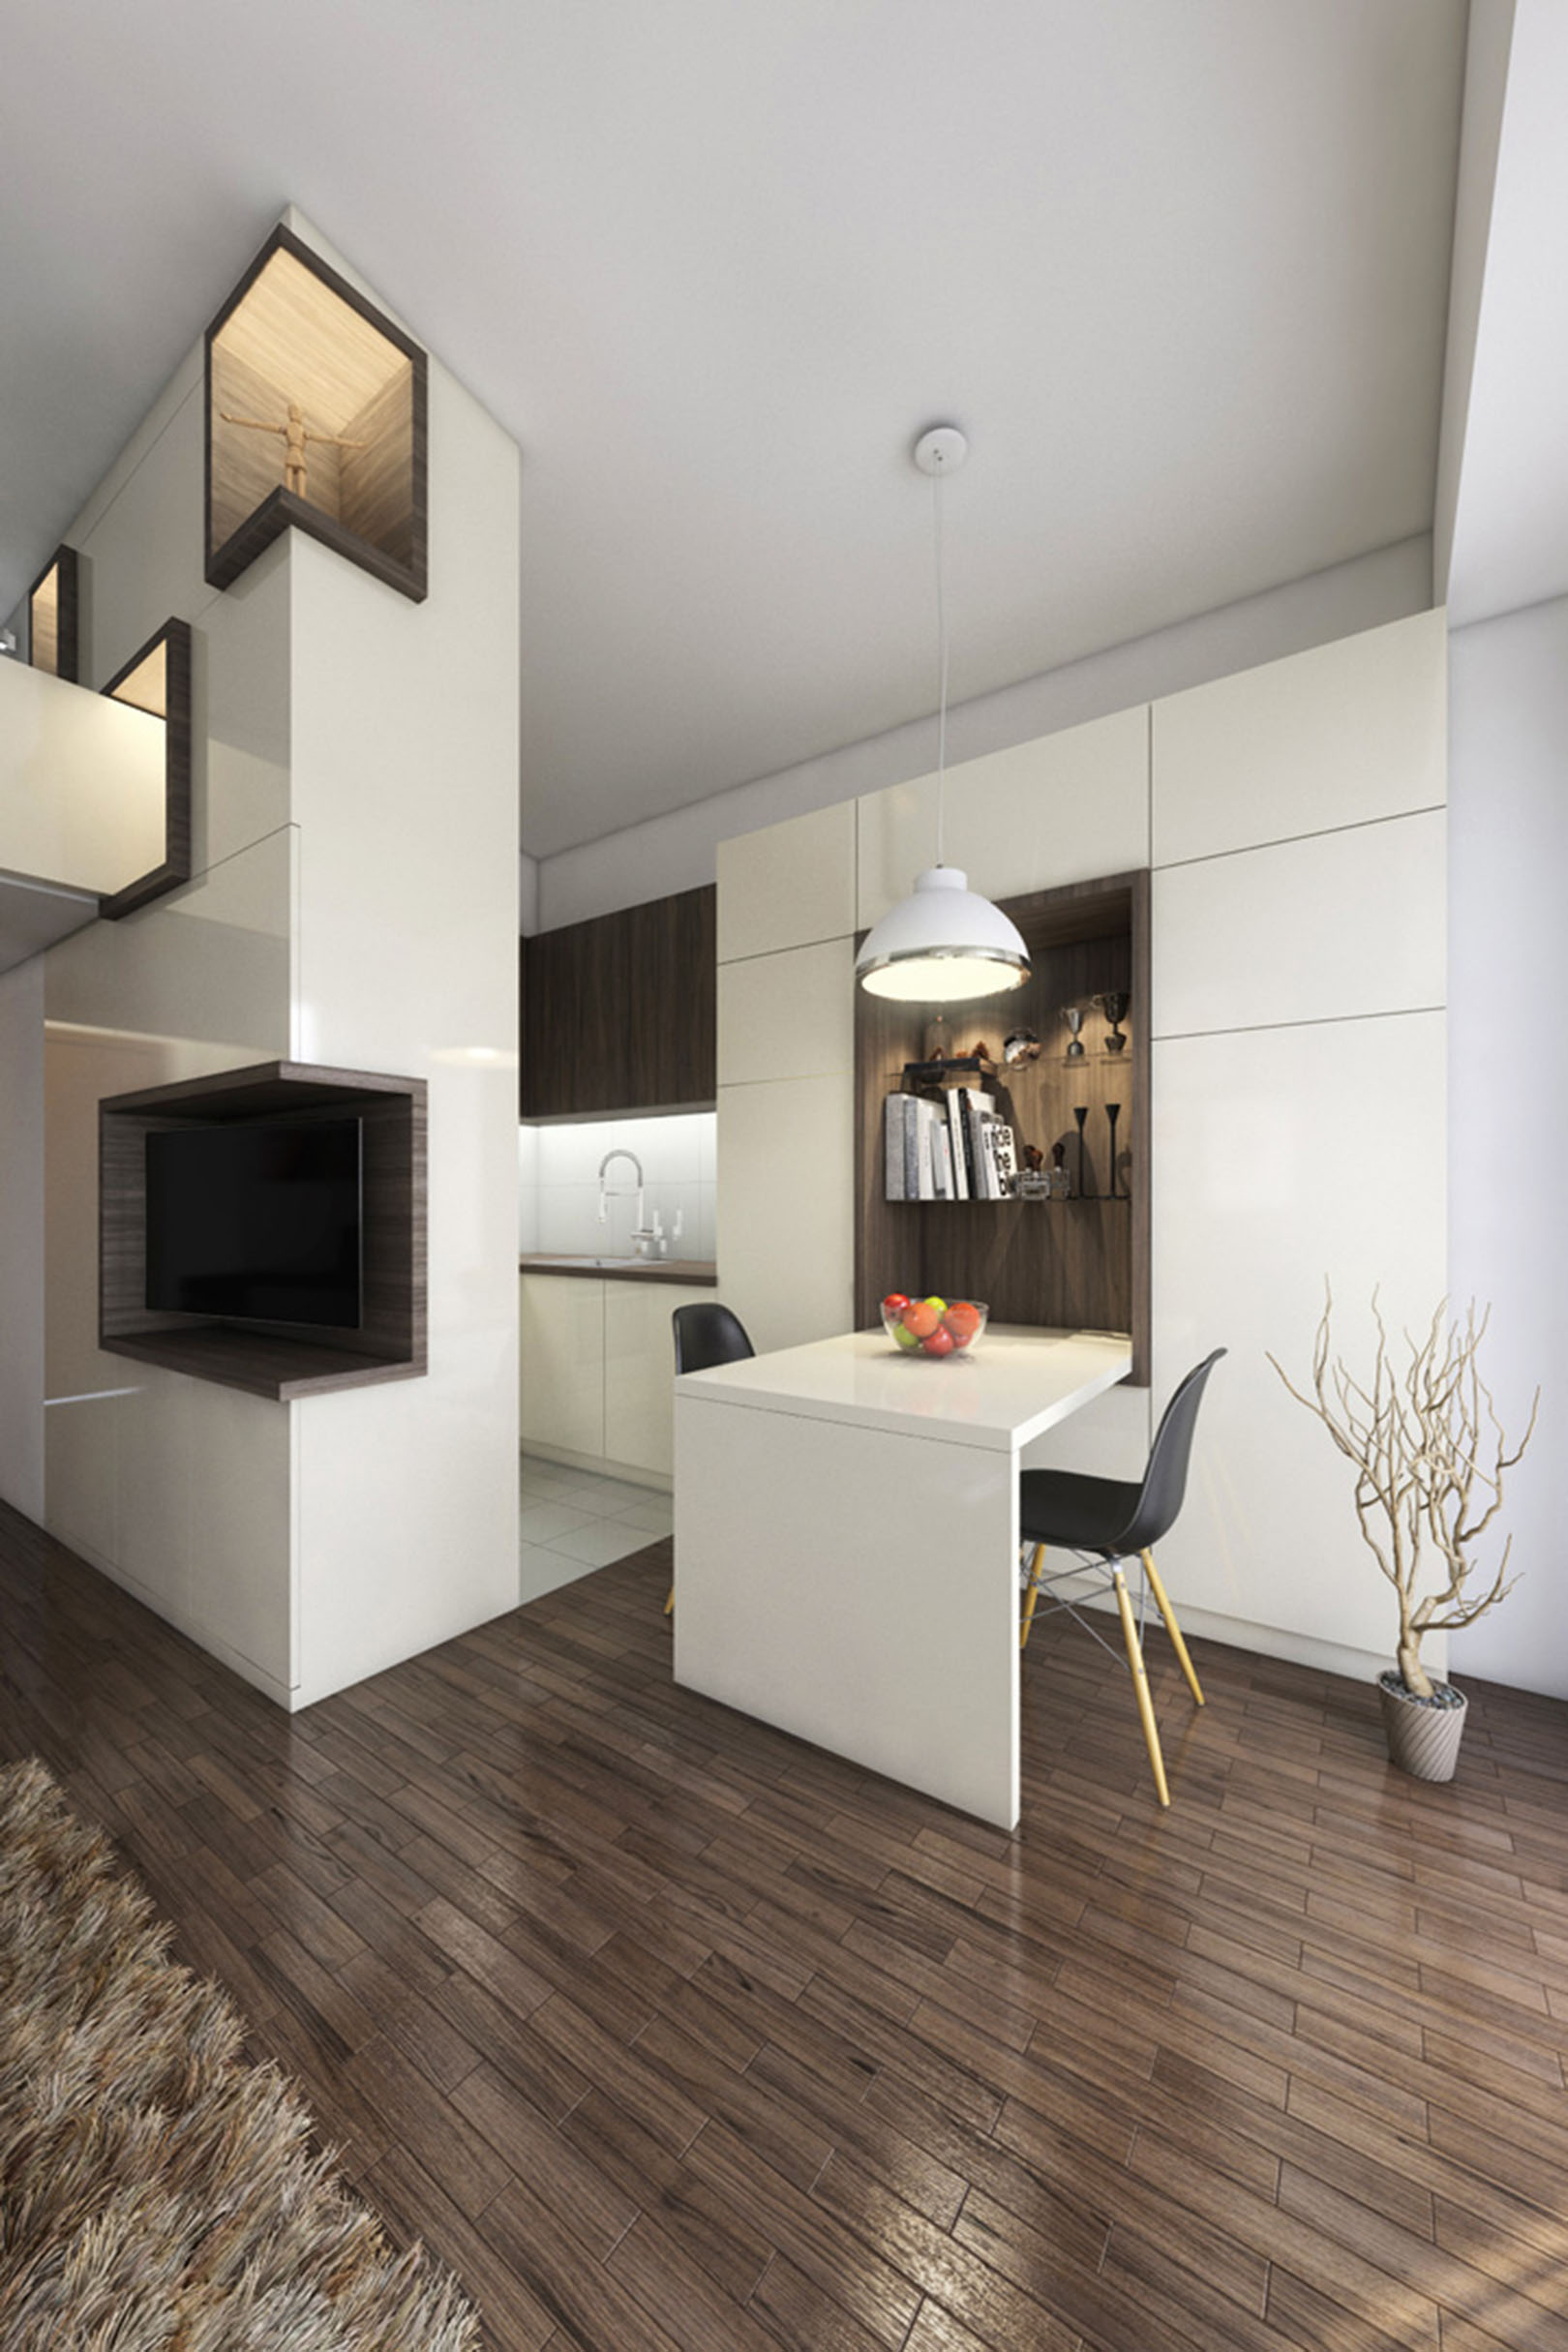 Arhitektura Budjevac – 3 Small City Apartment pr